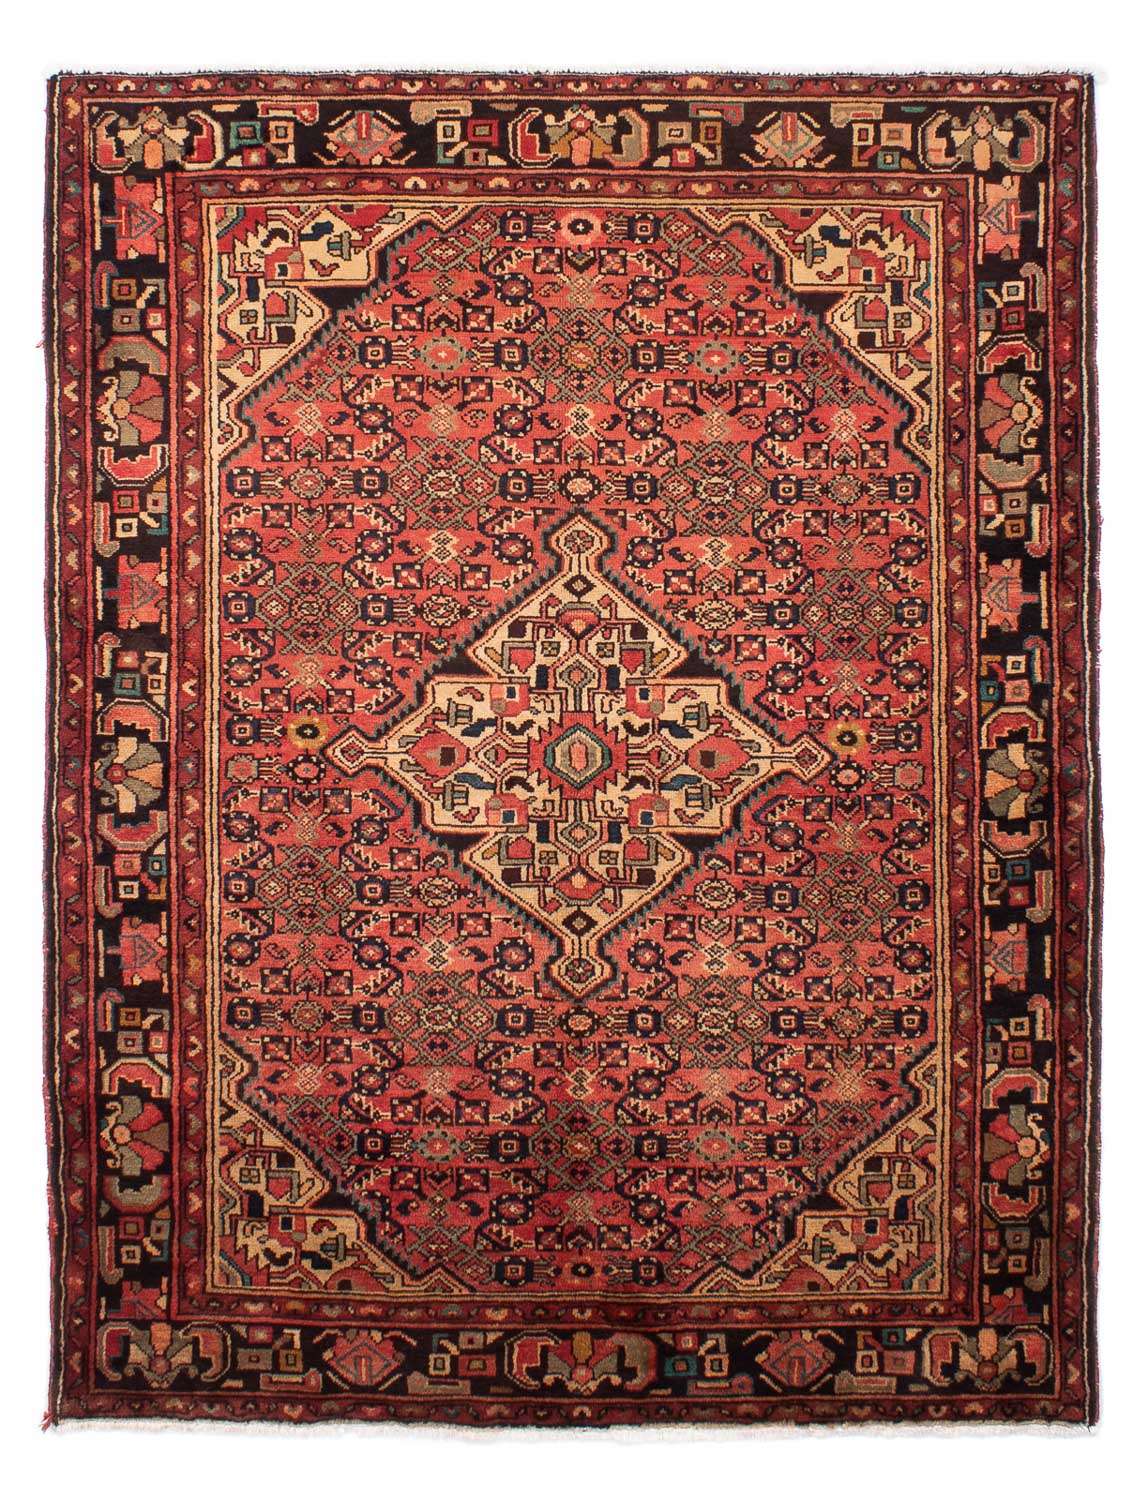 Tapis persan - Nomadic - 216 x 163 cm - rouge clair